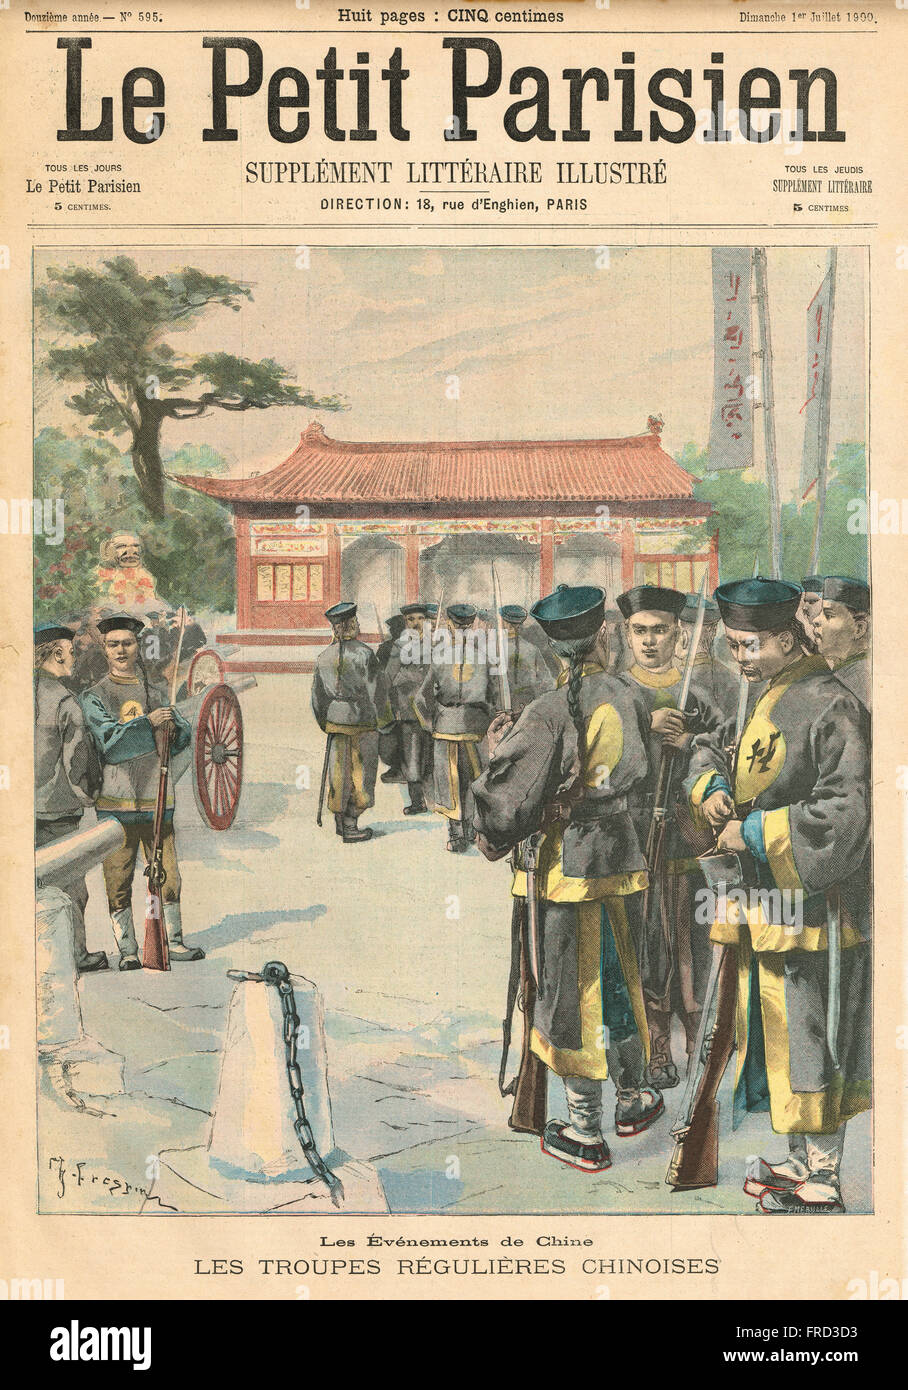 Ereignisse in China die reguläre Armee 1900. Französische illustrierte Zeitung Le Petit Parisien Illustration Stockfoto